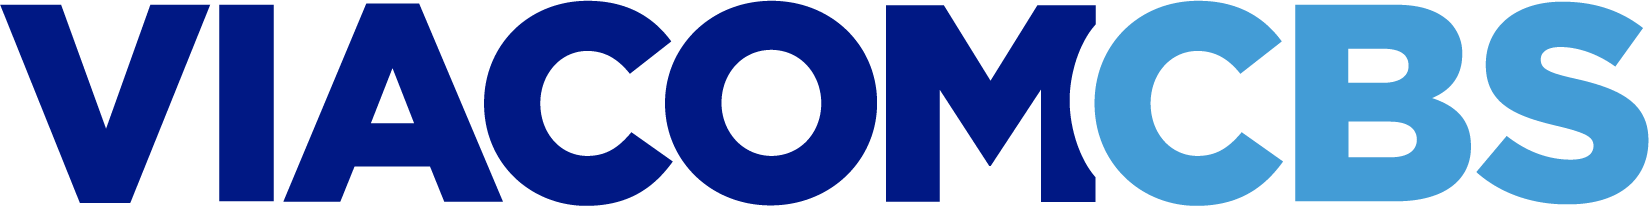 ViacomCBS Logo png